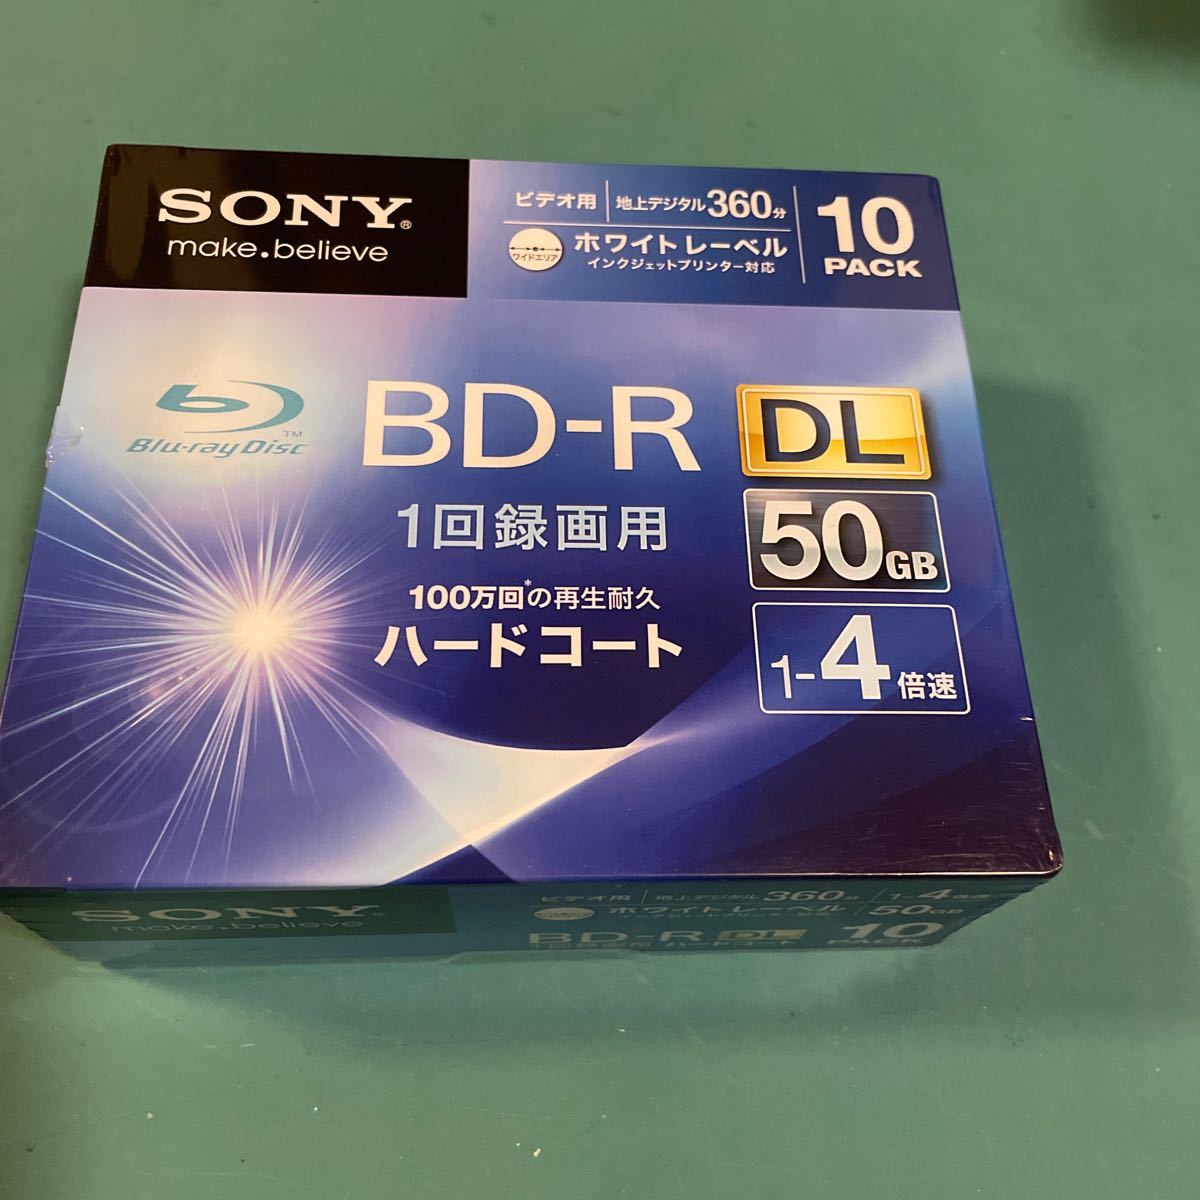 SONY 録画用BD-R DL 50GB ホワイトレーベル パッケージ傷あり。_画像1